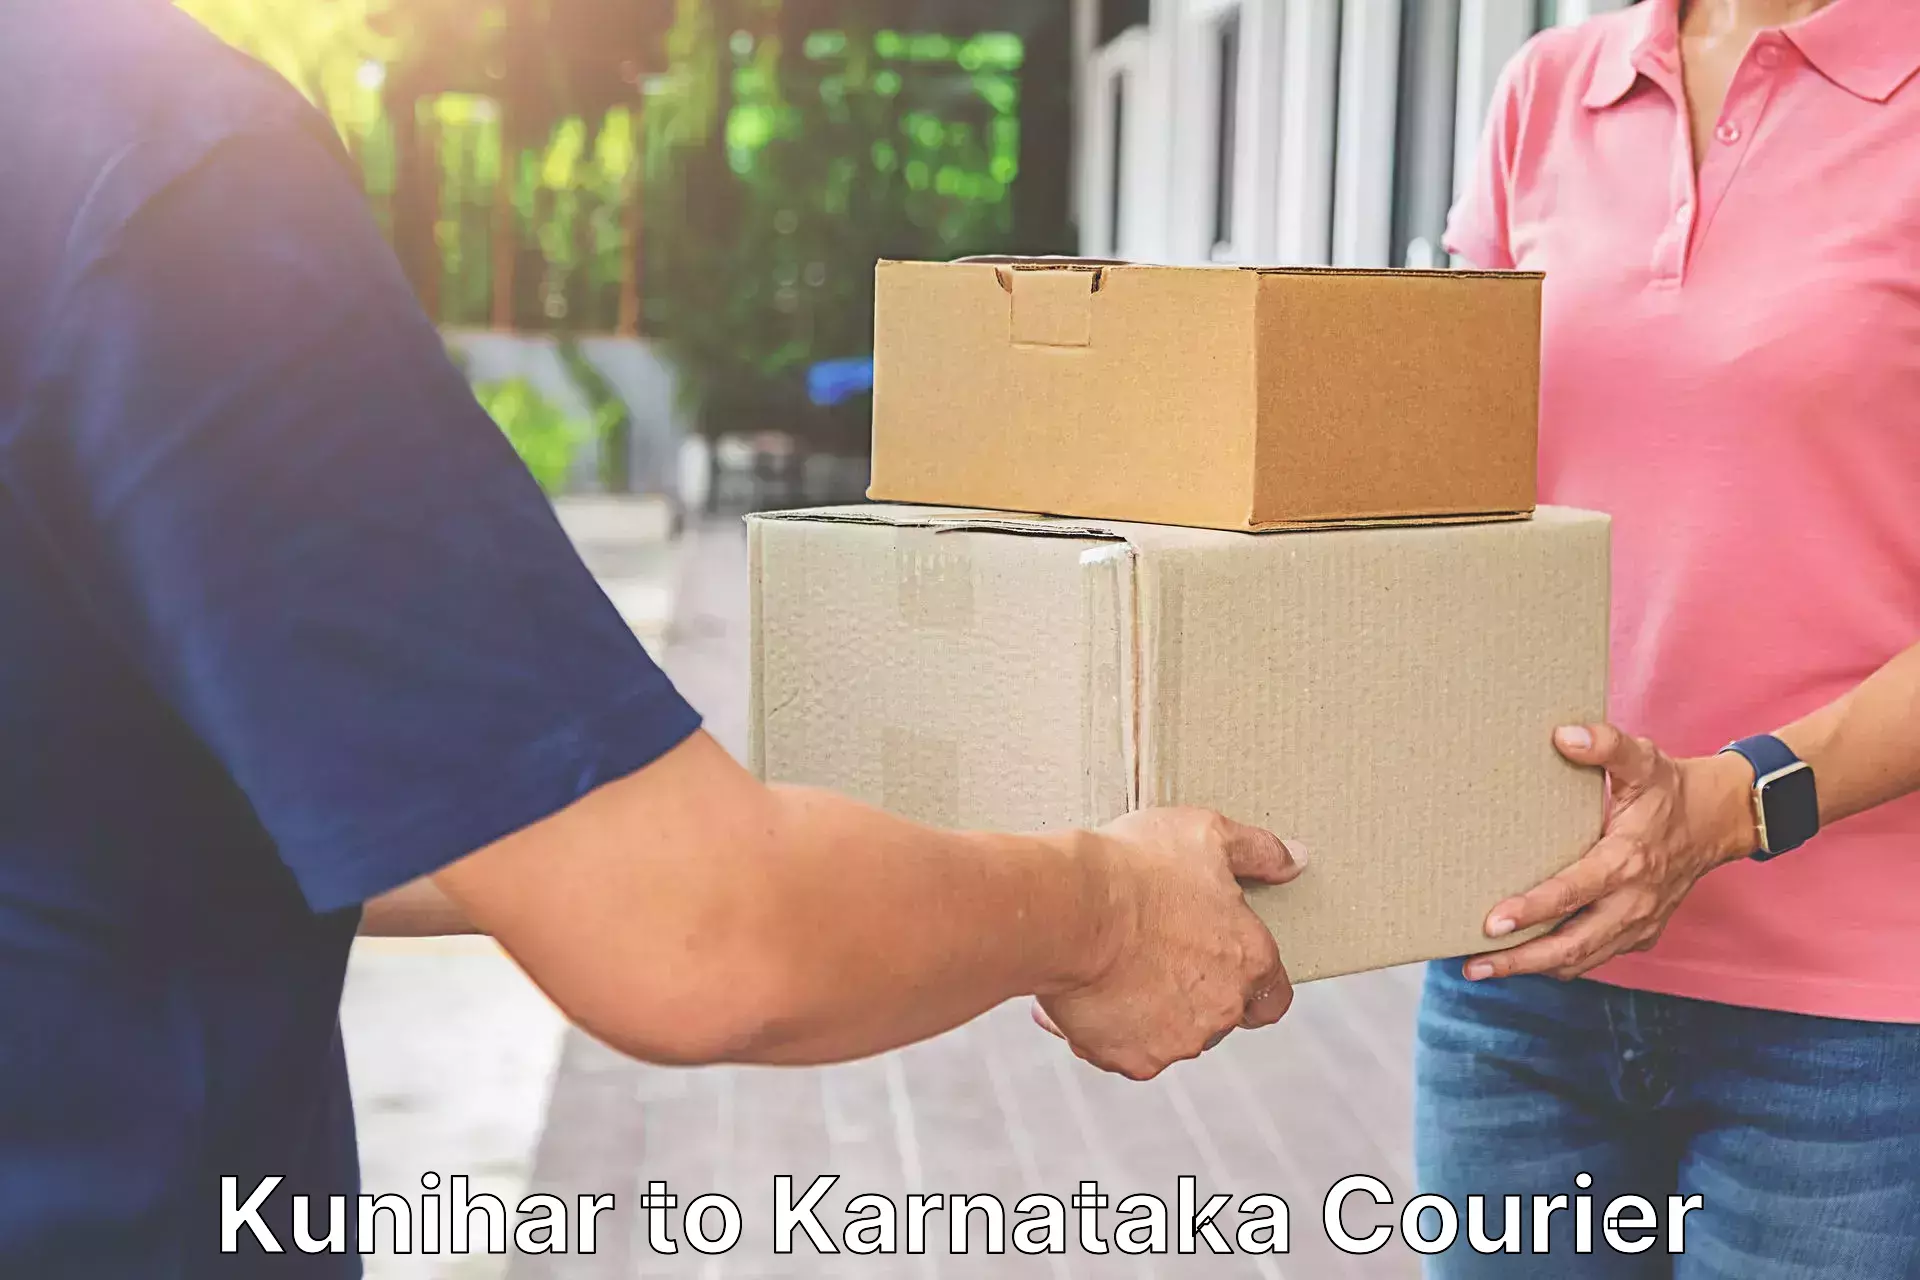 Fast delivery service Kunihar to Raichur